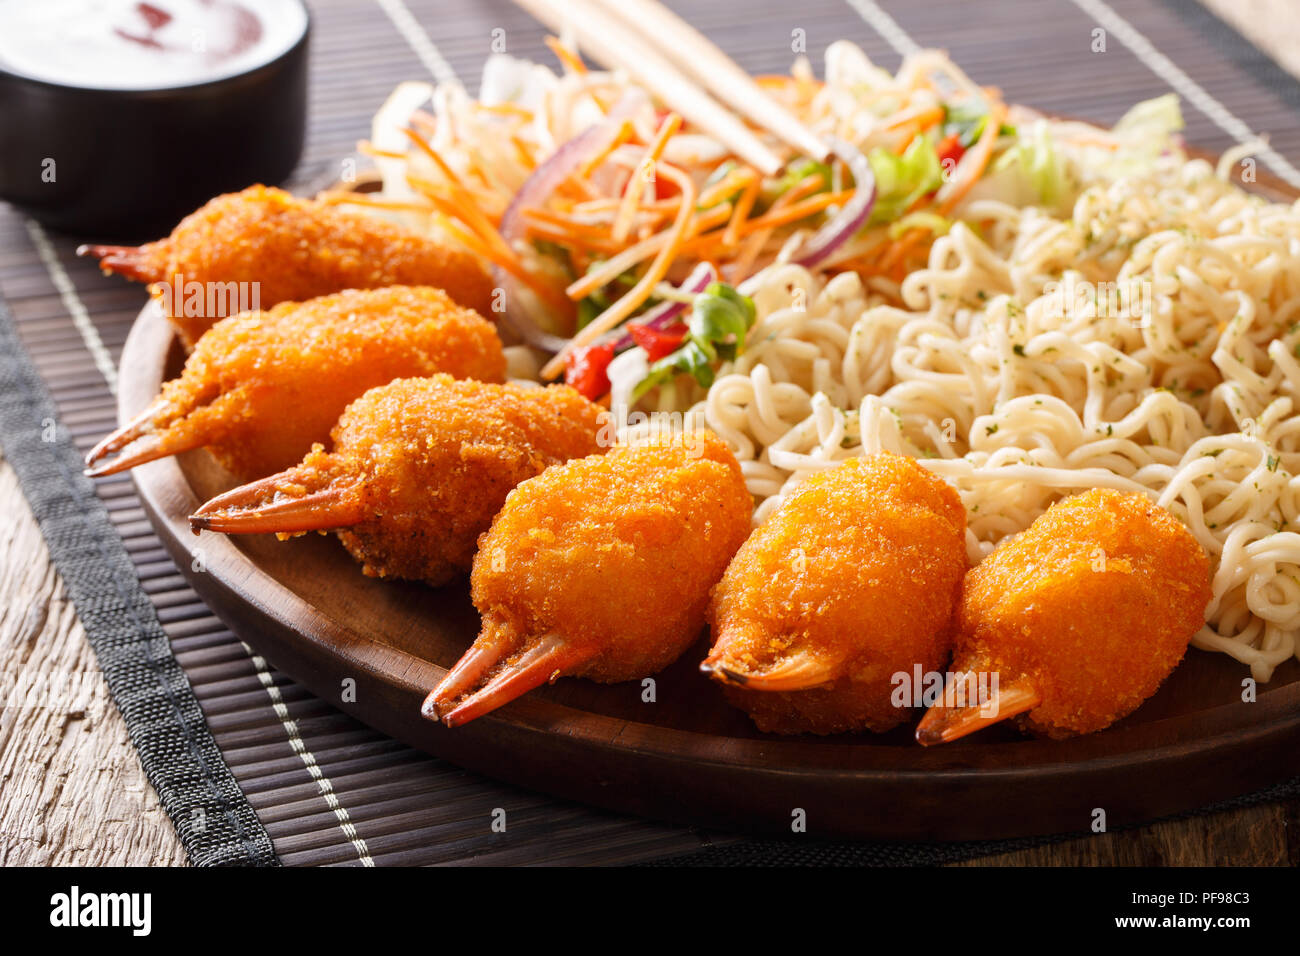 La cuisine chinoise : pinces de crabe dans la panure avec des nouilles aux œufs et une salade de légumes frais close-up sur une plaque sur une table horizontale. Banque D'Images